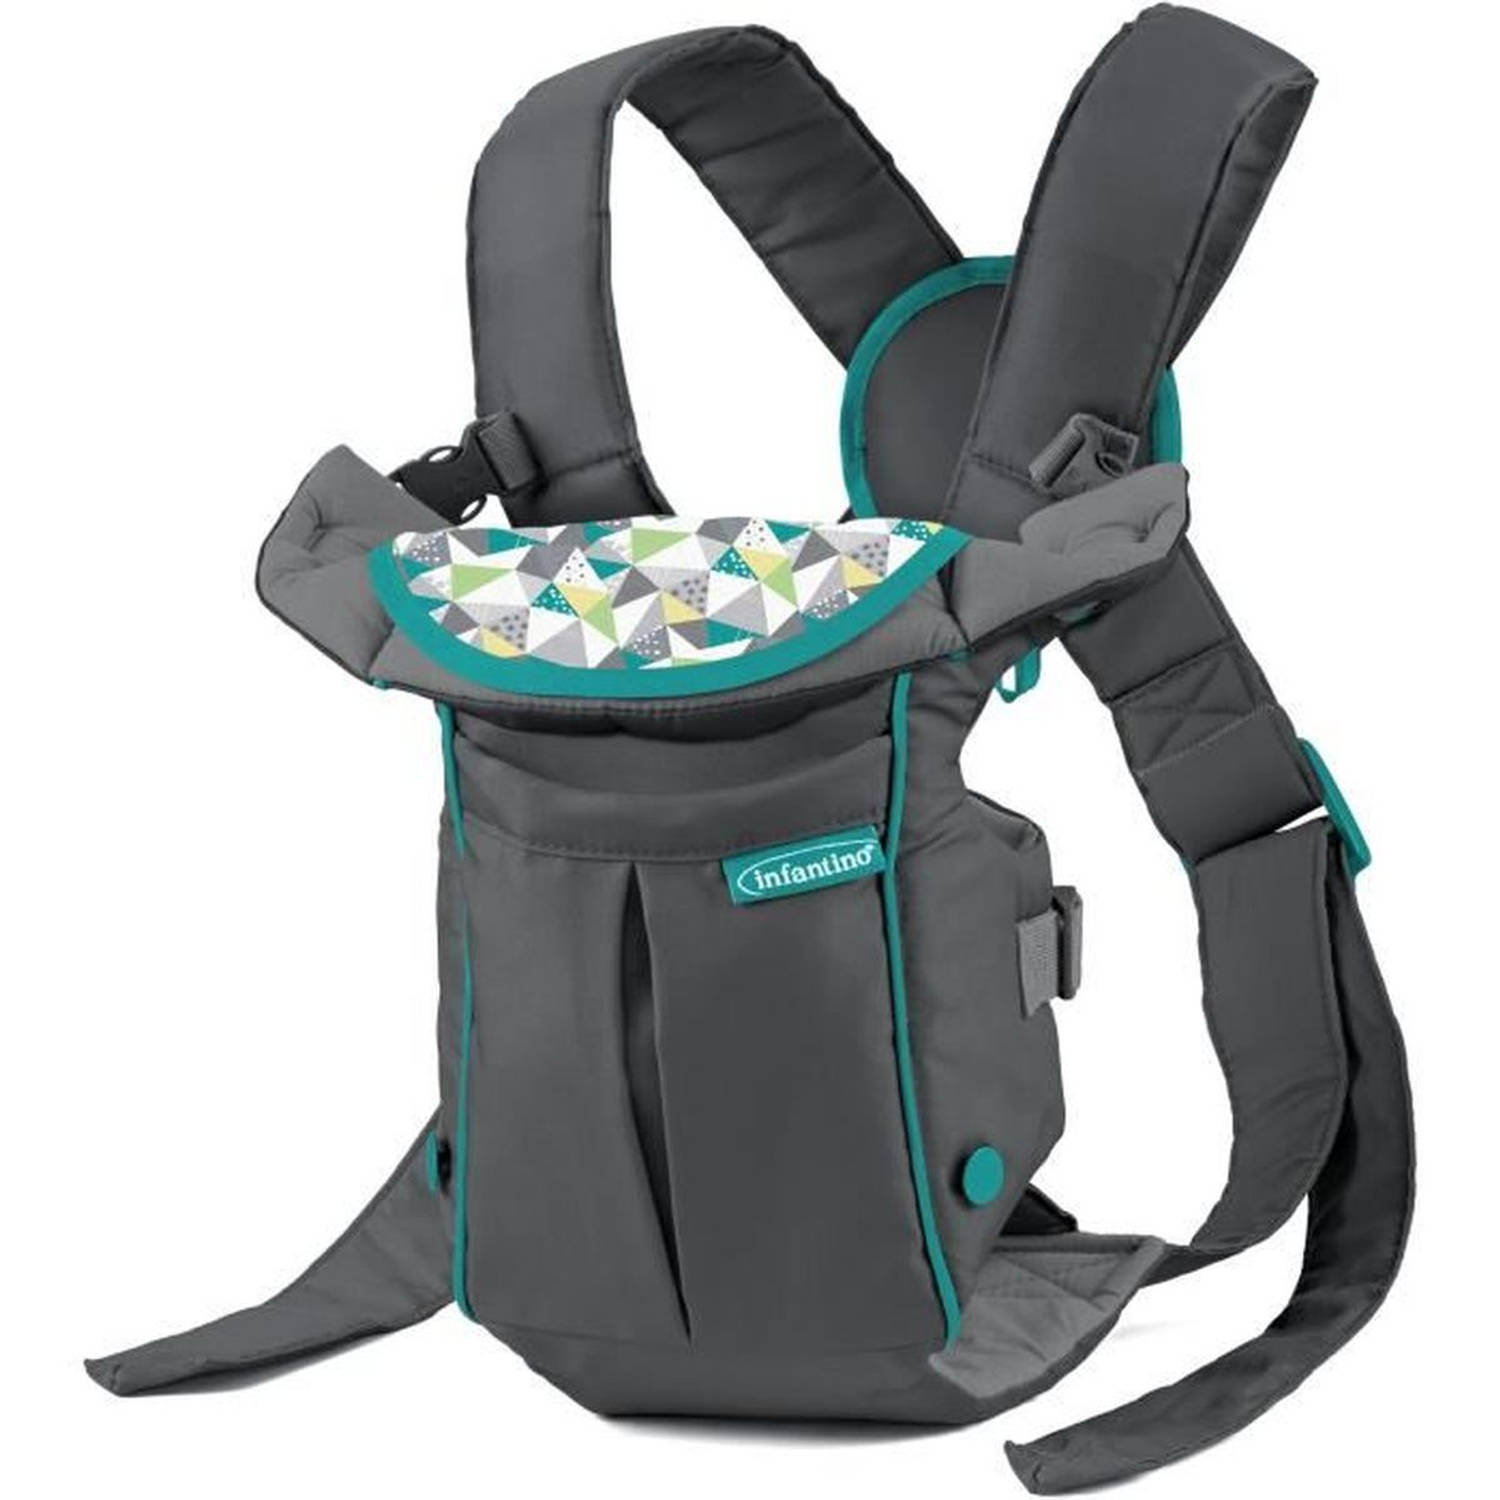 Swift Classic Carrier – ergonomische Babytrage mit 2 Tragepositionen und Tasche, graue verstellbare Babytrage mit Hüftsitz und Fronttasche zum Verstauen wichtiger Utensilien,